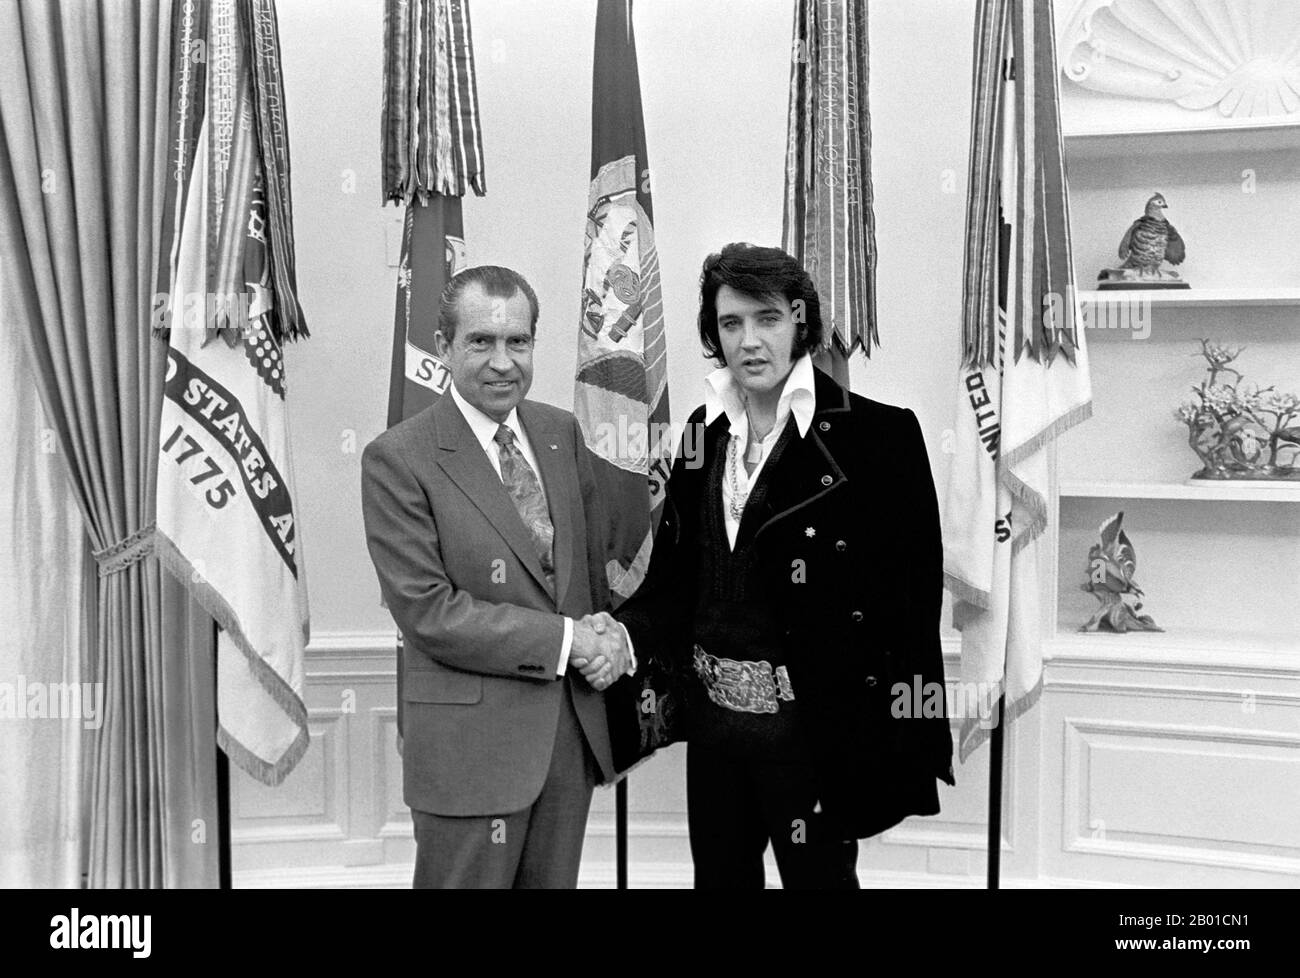 Etats-Unis: Le Président Richard Nixon (9 janvier 1913 - 22 avril 1994) entre les mains d'Elvis Presley (8 janvier 1935 - 16 août 1977) à la Maison Blanche, le 21 décembre 1970. Elvis Presley a rencontré le président Richard Nixon dans le bureau ovale de la Maison Blanche le 21st décembre 1970. La Bibliothèque et lieu de naissance de Nixon vend un certain nombre d'objets souvenirs avec cette photo et la légende, « le Président et le Roi ». Cheekily, cette photo est dite "des deux plus grands artistes de l'enregistrement du 20th siècle". Banque D'Images